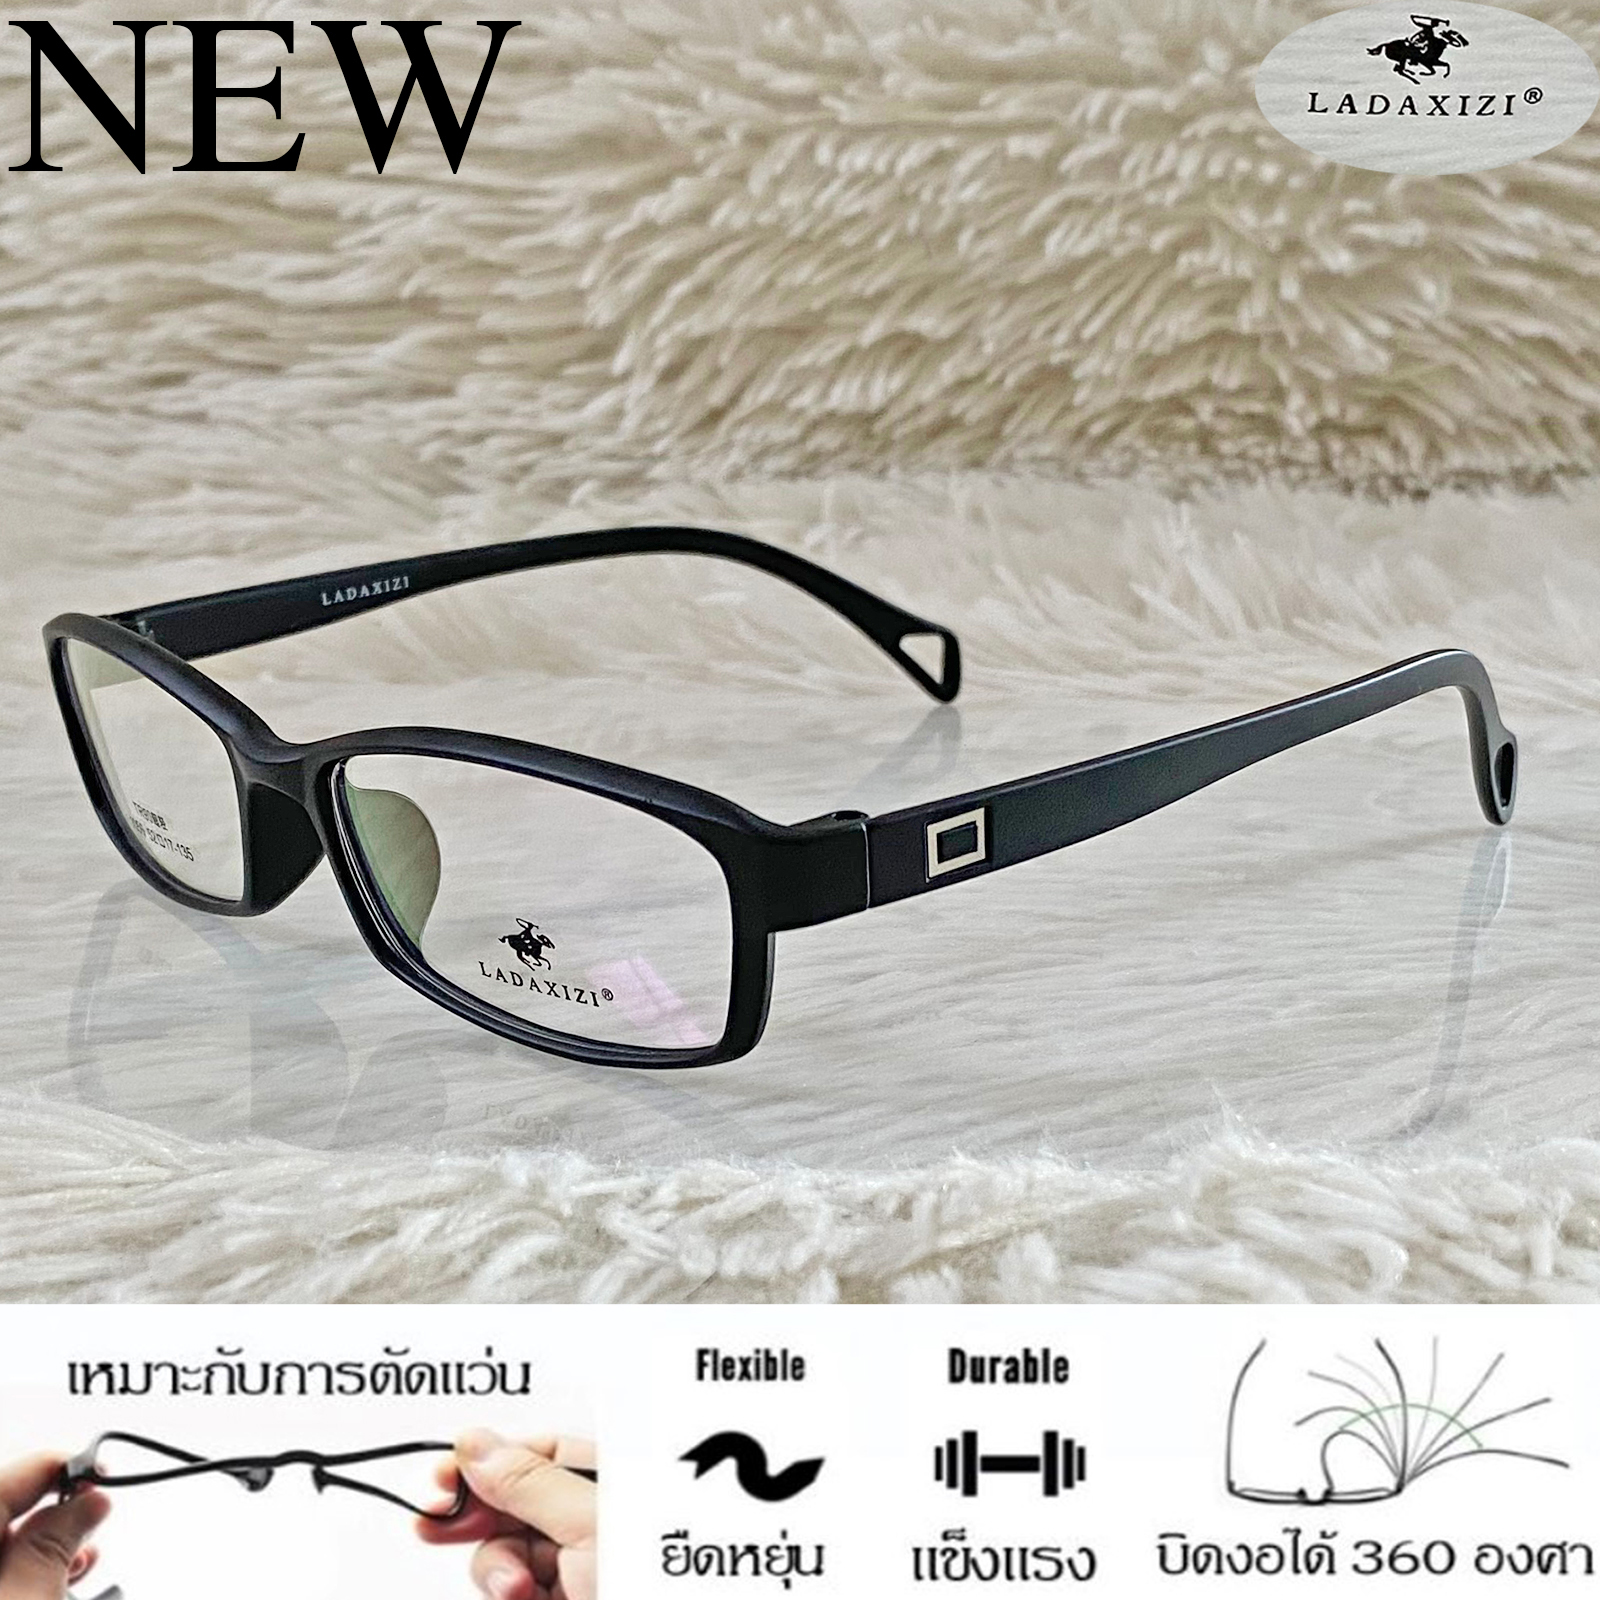 กรอบแว่นตา TR 90 สำหรับตัดเลนส์ แว่นตา Fashion ชาย-หญิง รุ่น LADAXIZI 1059 สีดำ กรอบเต็ม ทรงเหลี่ยม ขาข้อต่อ ทนความร้อนสูง รับตัดเลนส์ ทุกชนิด